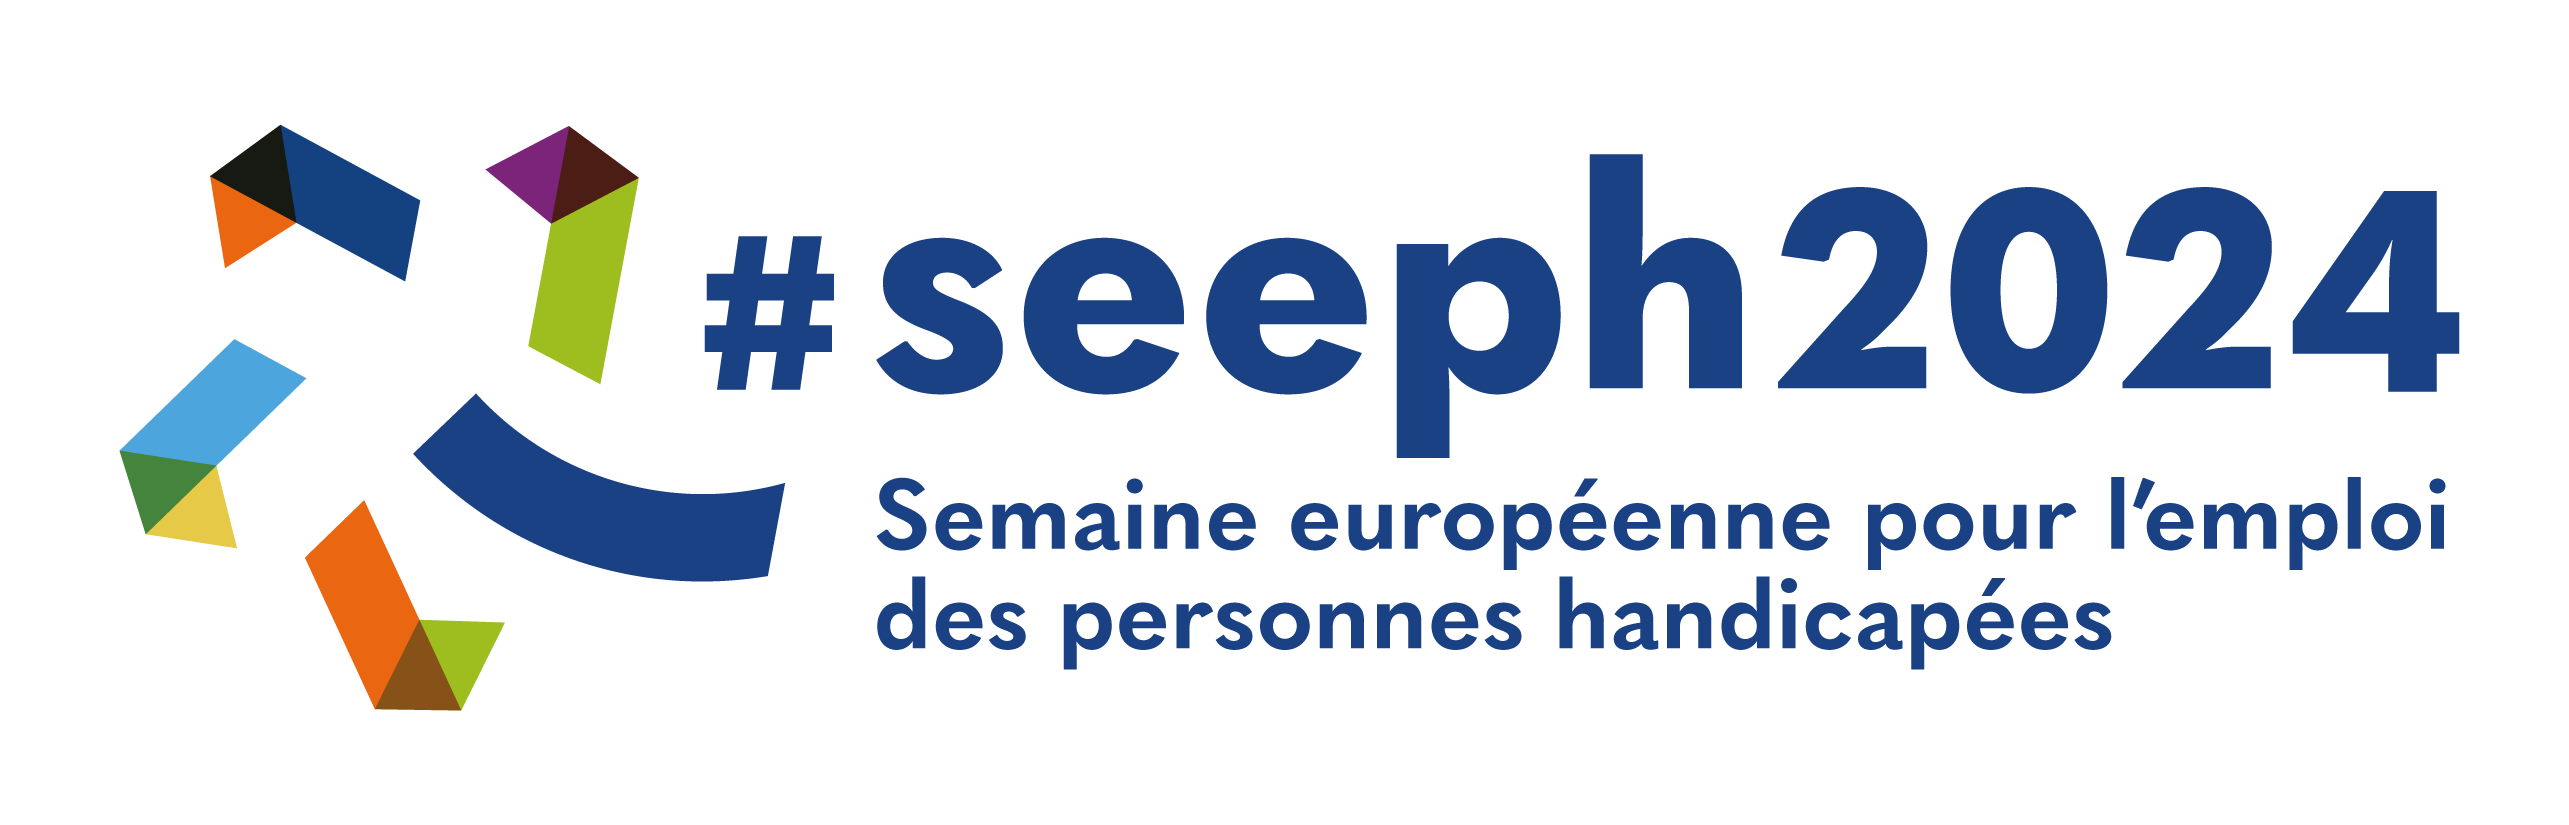 logo de la seeph2024